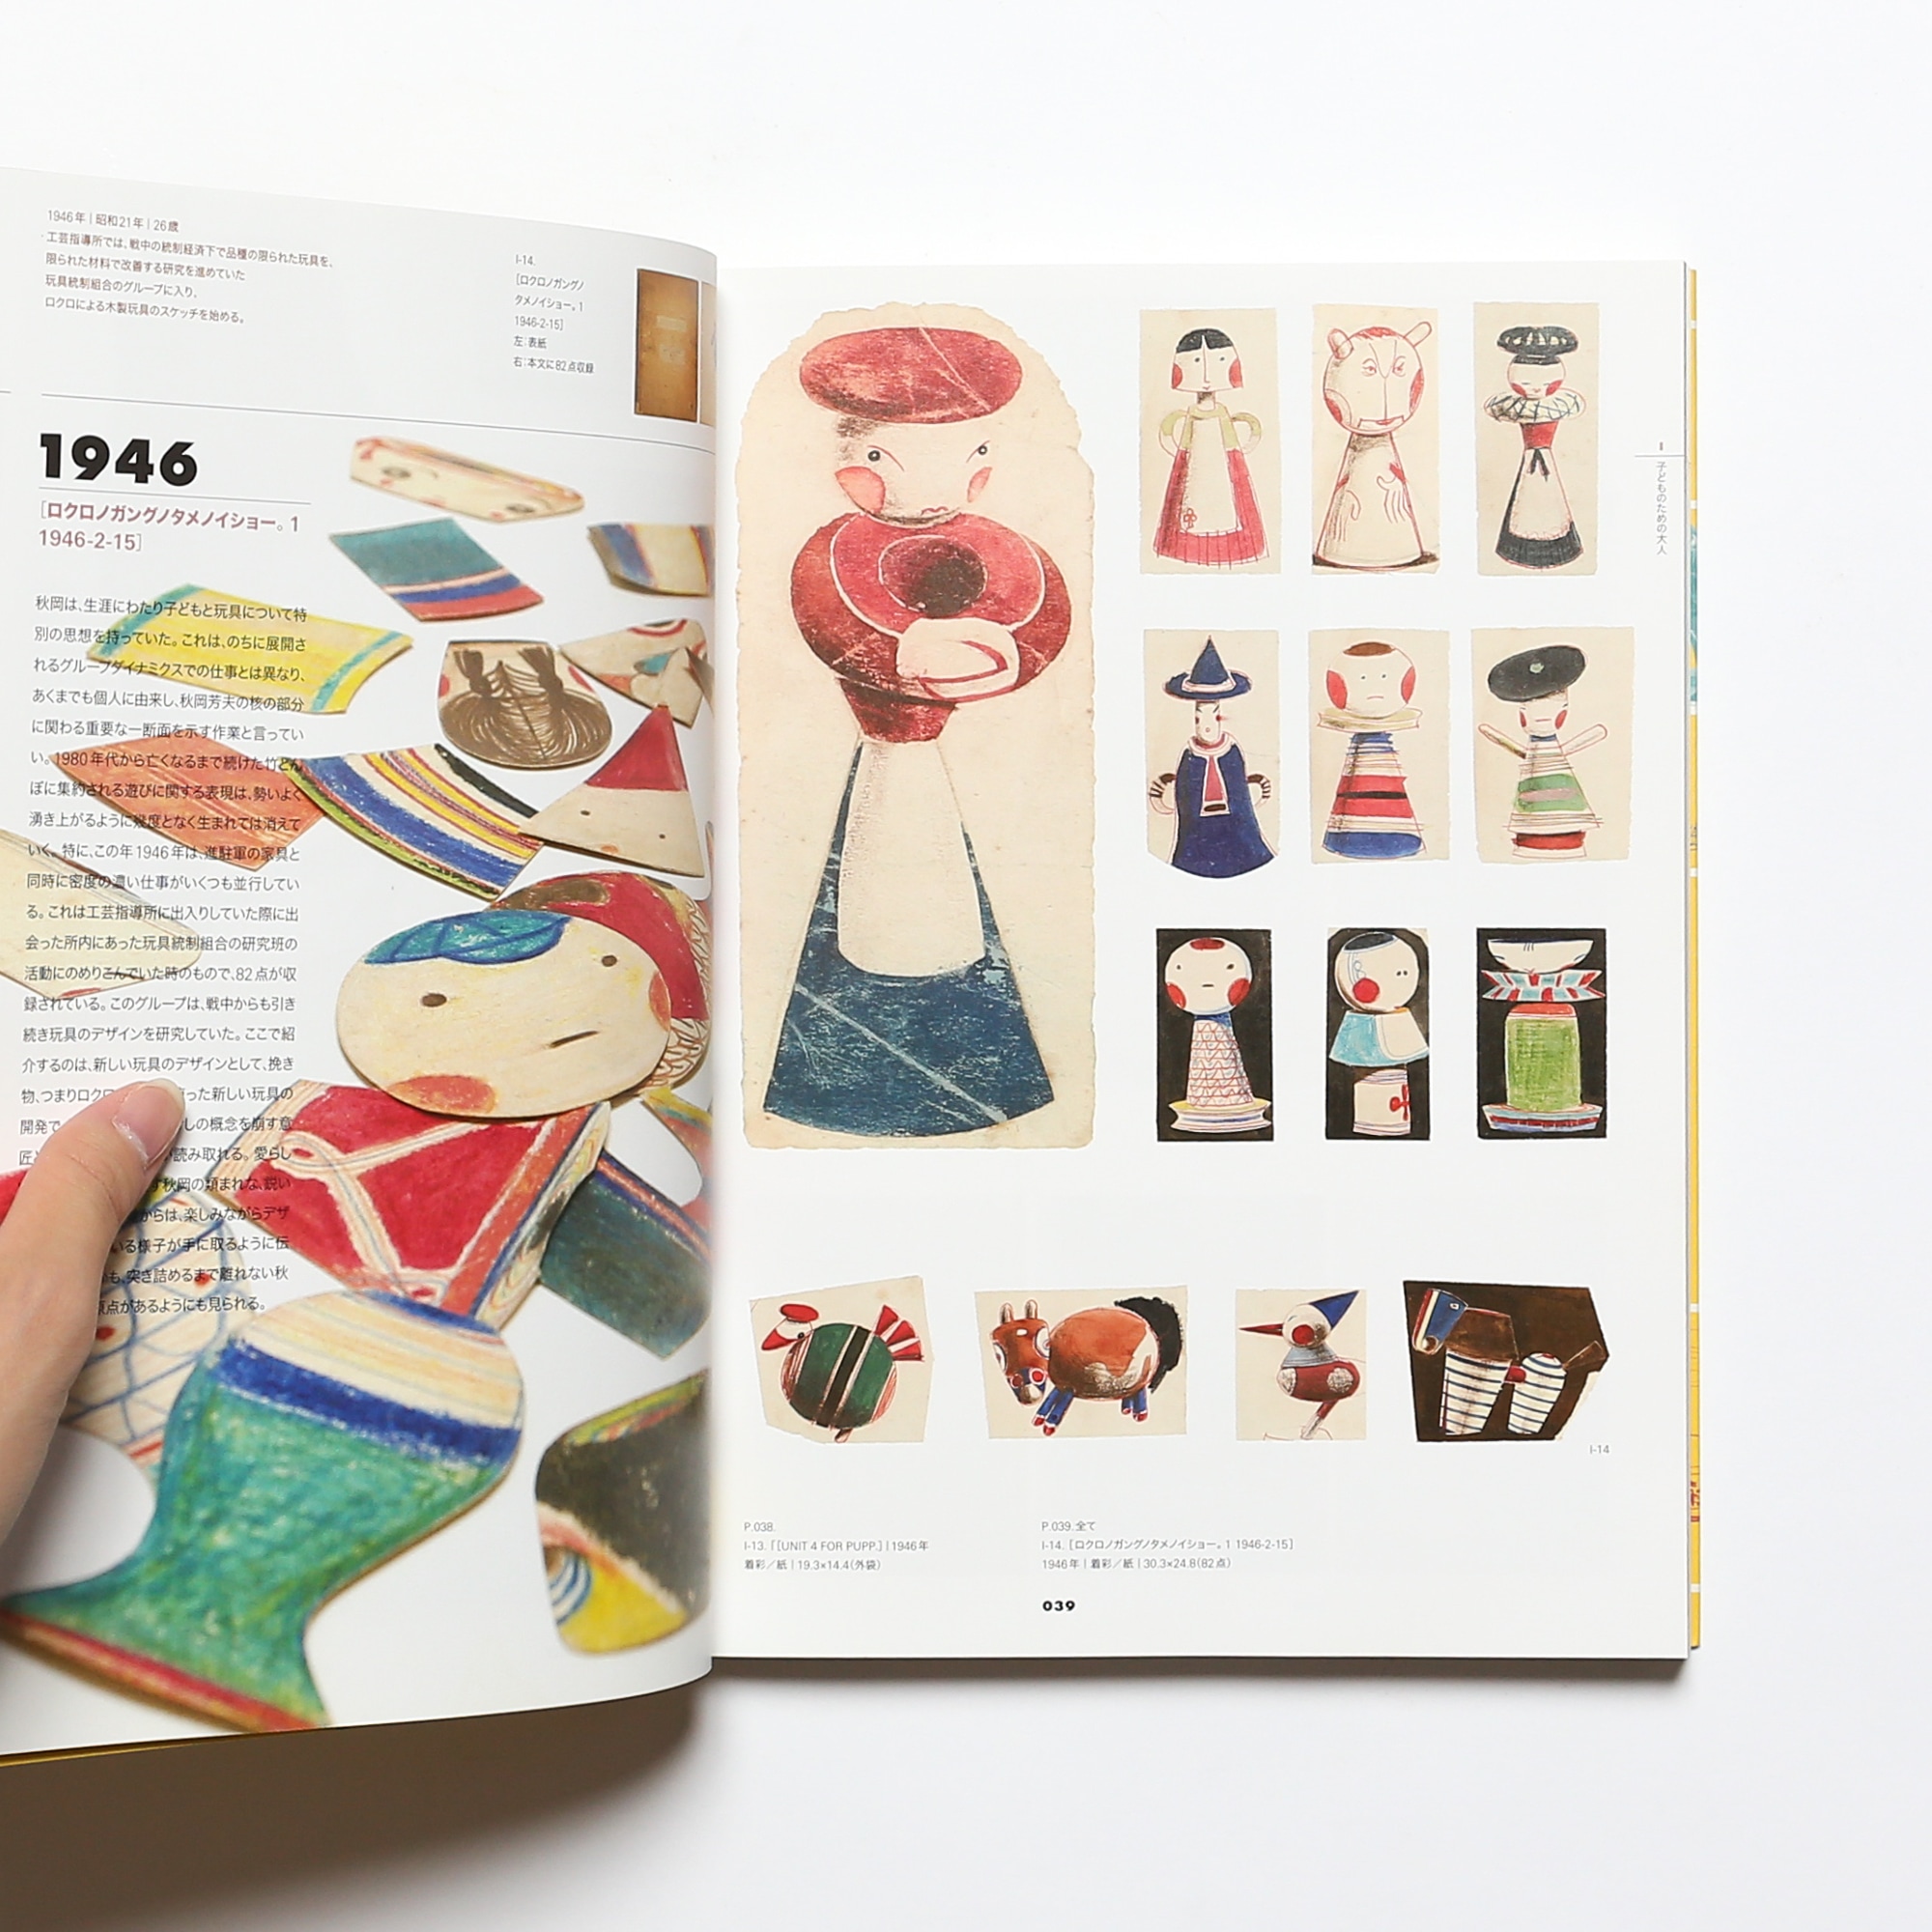 DOMA 秋岡芳夫展 モノへの思想と関係のデザイン | nostos books ノスト 